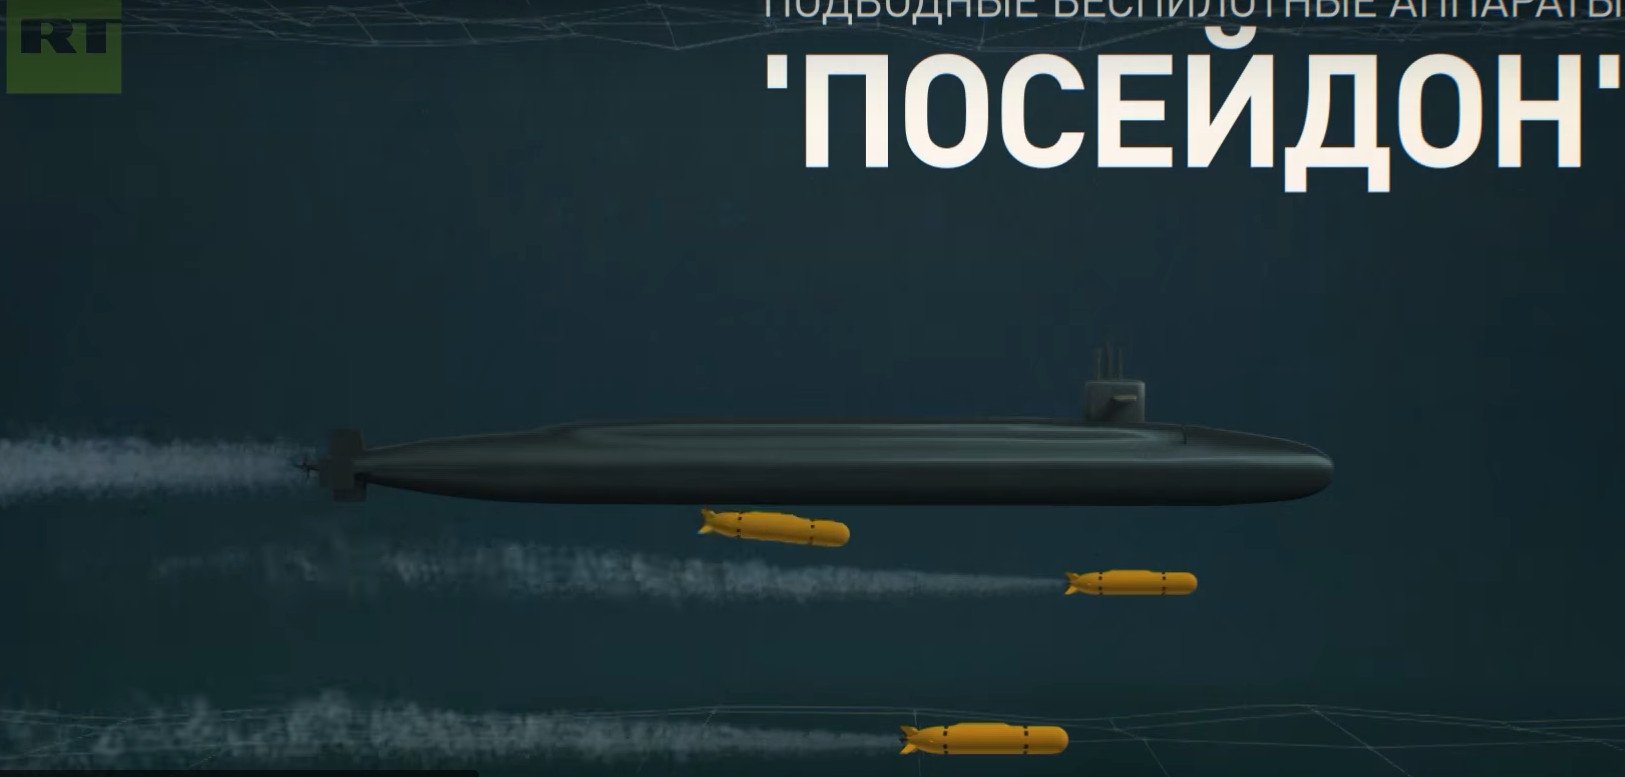 Посейдон бомба. Подводная ракета Посейдон. Посейдон беспилотный подводный аппарат. Атомная подводная лодка Посейдон. Посейдон ядерное оружие.